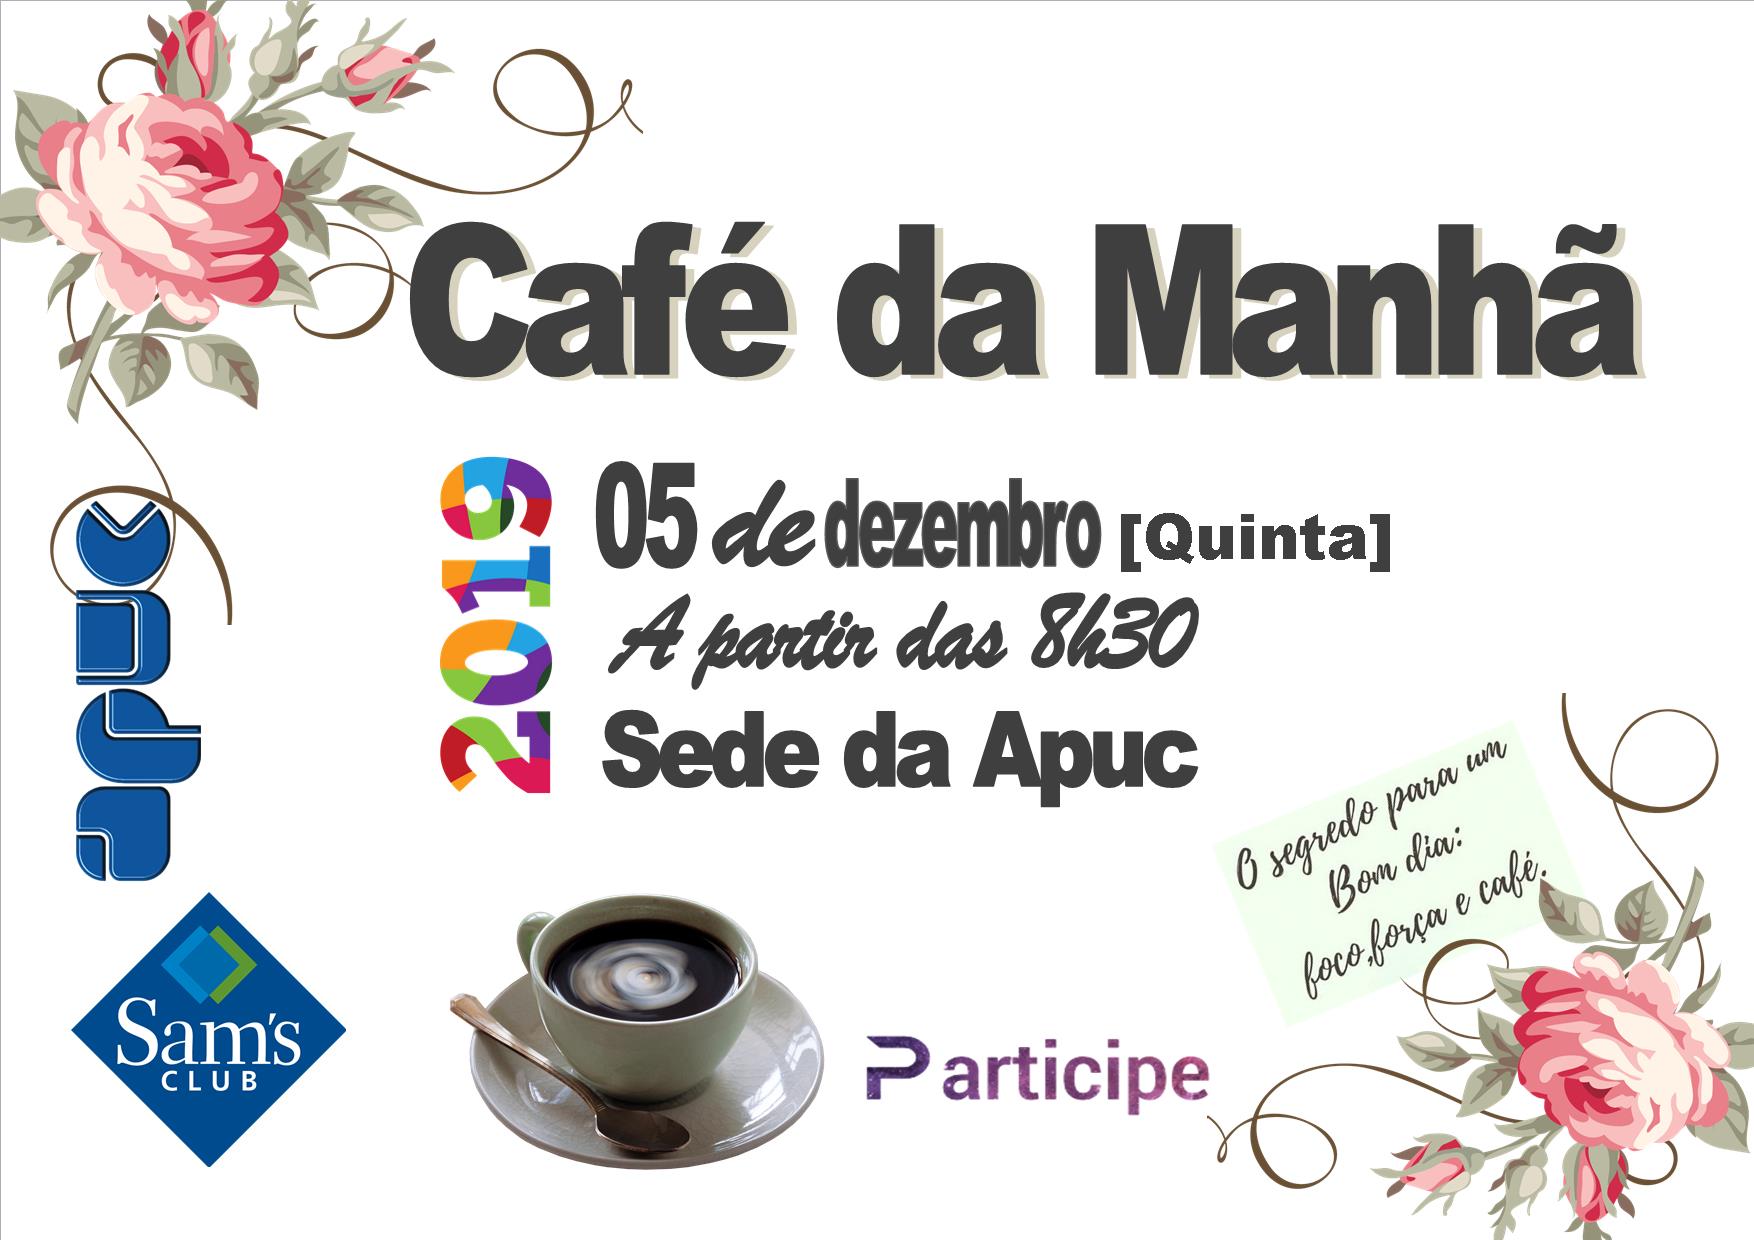 02.12.2019 cartaz cafe da manha sams club